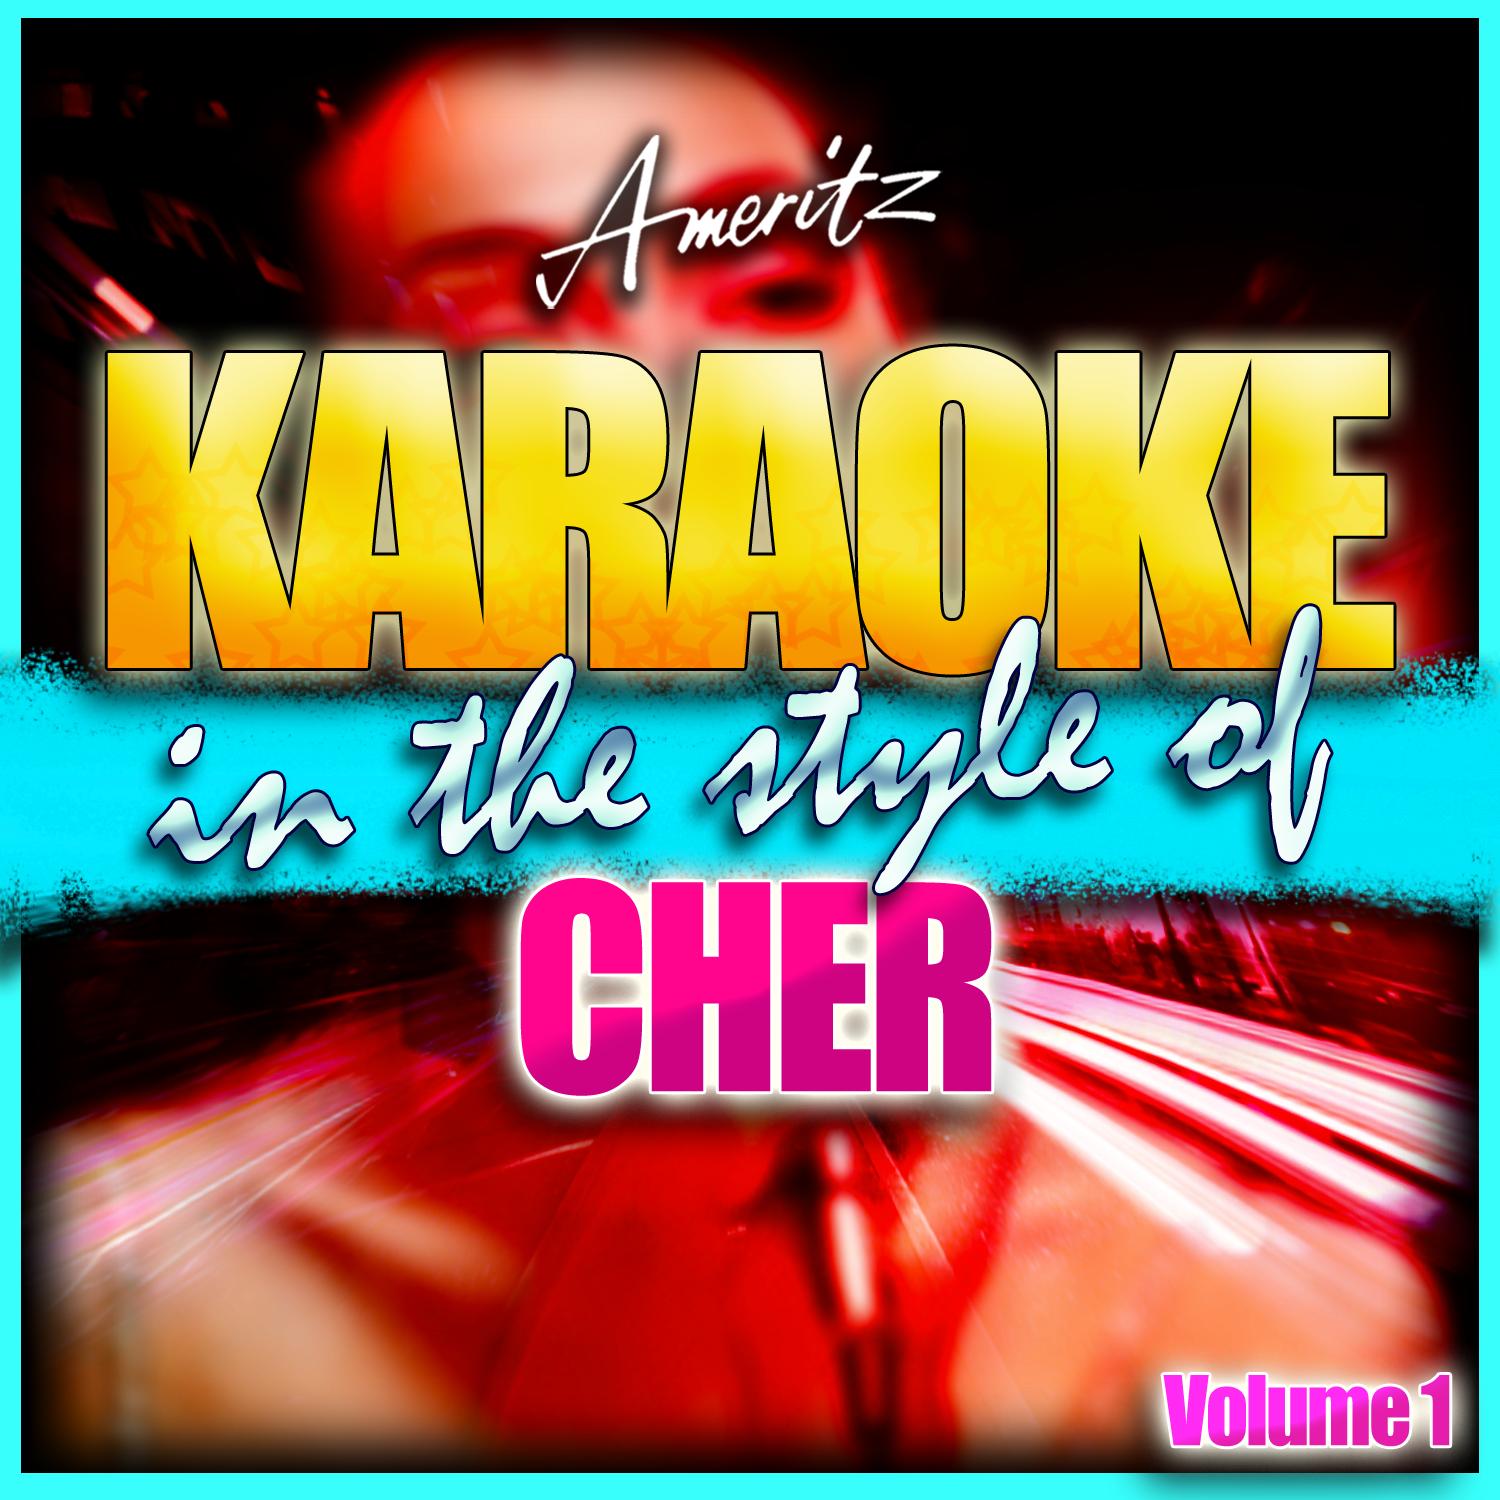 Karaoke - Cher Vol. 1